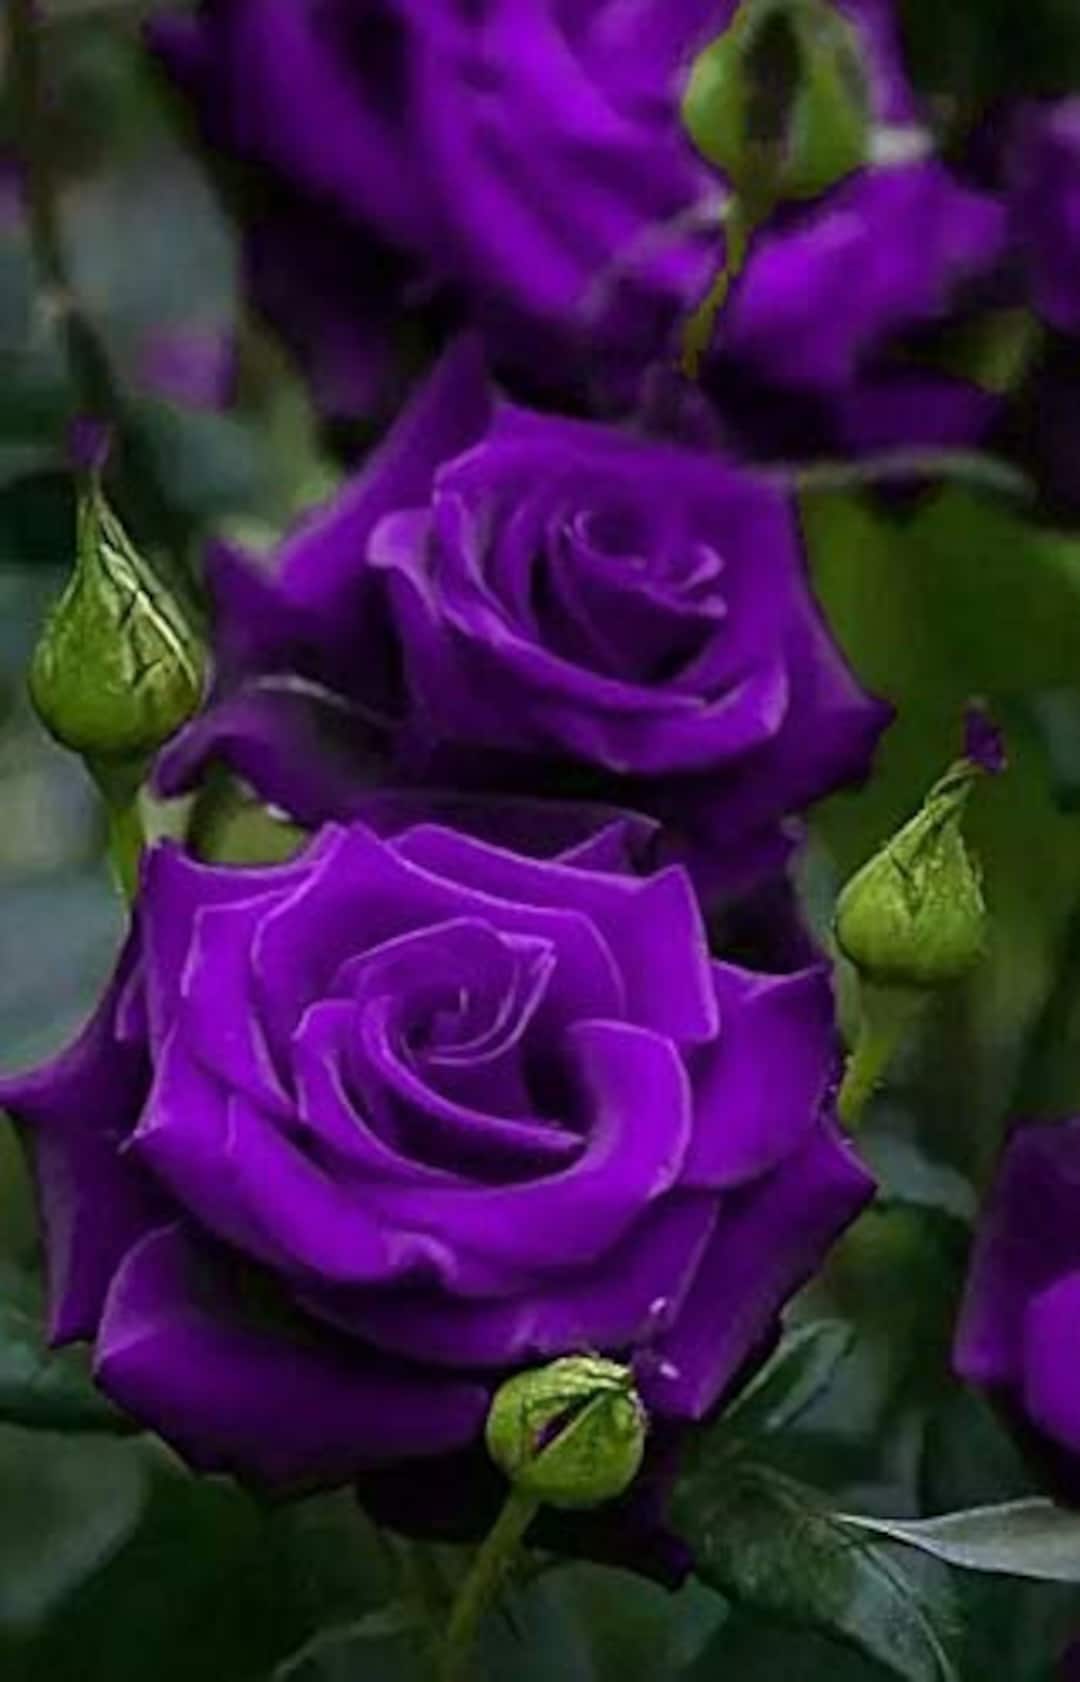 Buy Purple Roses Seeds 20 Seeds Code 004 Online in India - Etsy